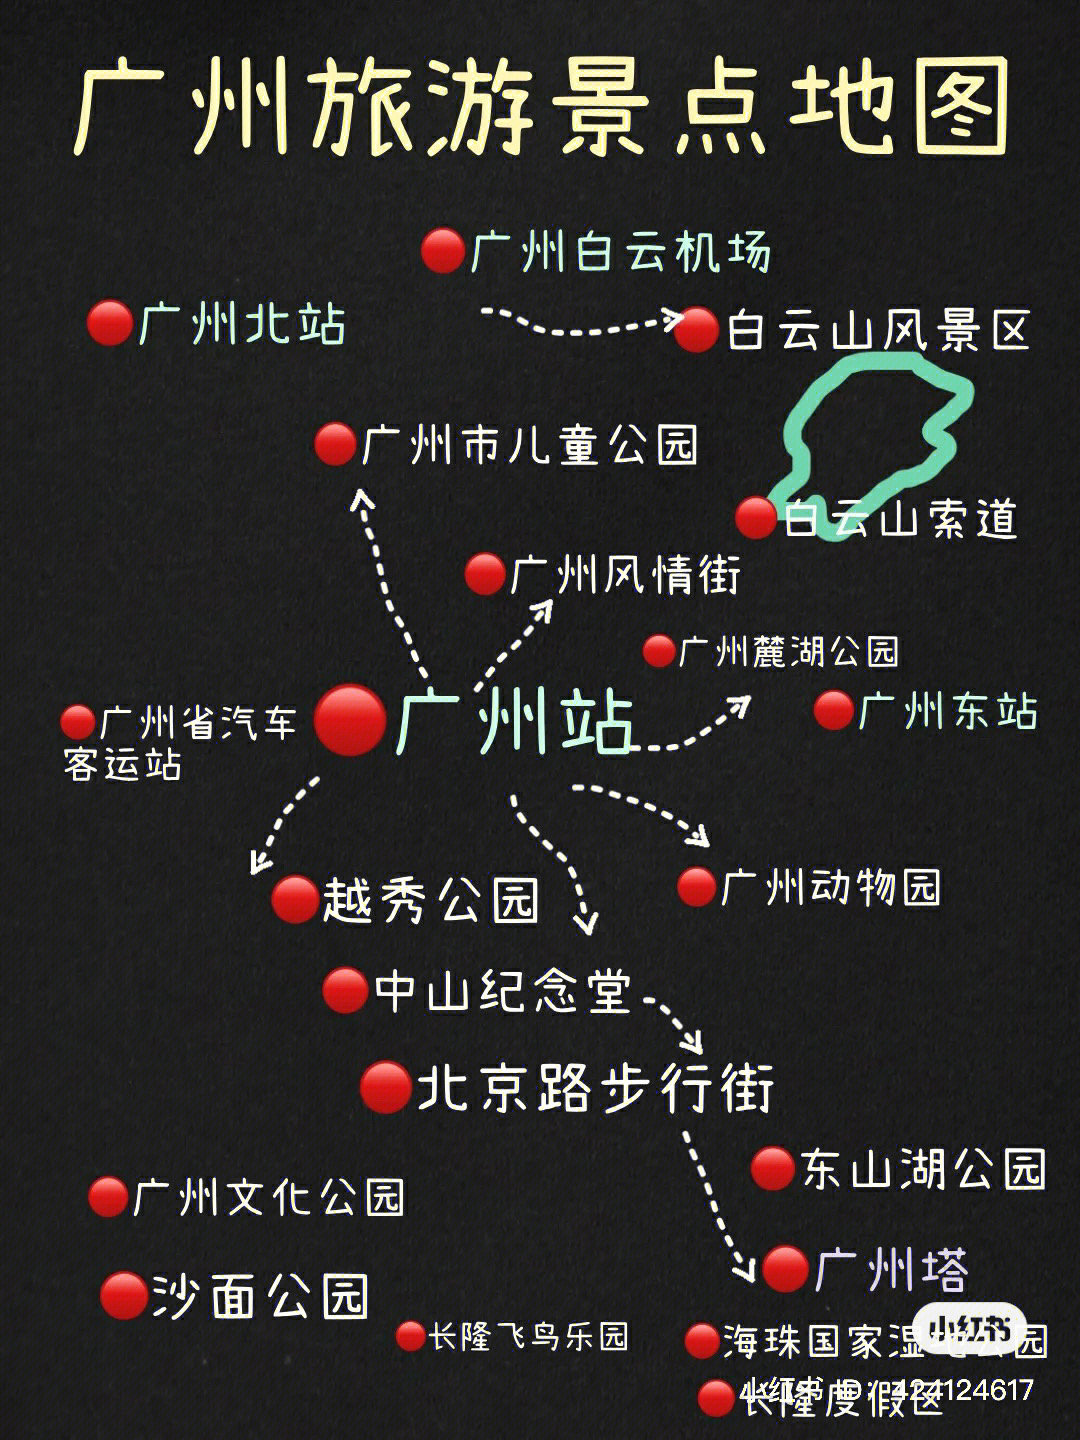 全网最全广州旅游美食攻略手绘景区地铁地图